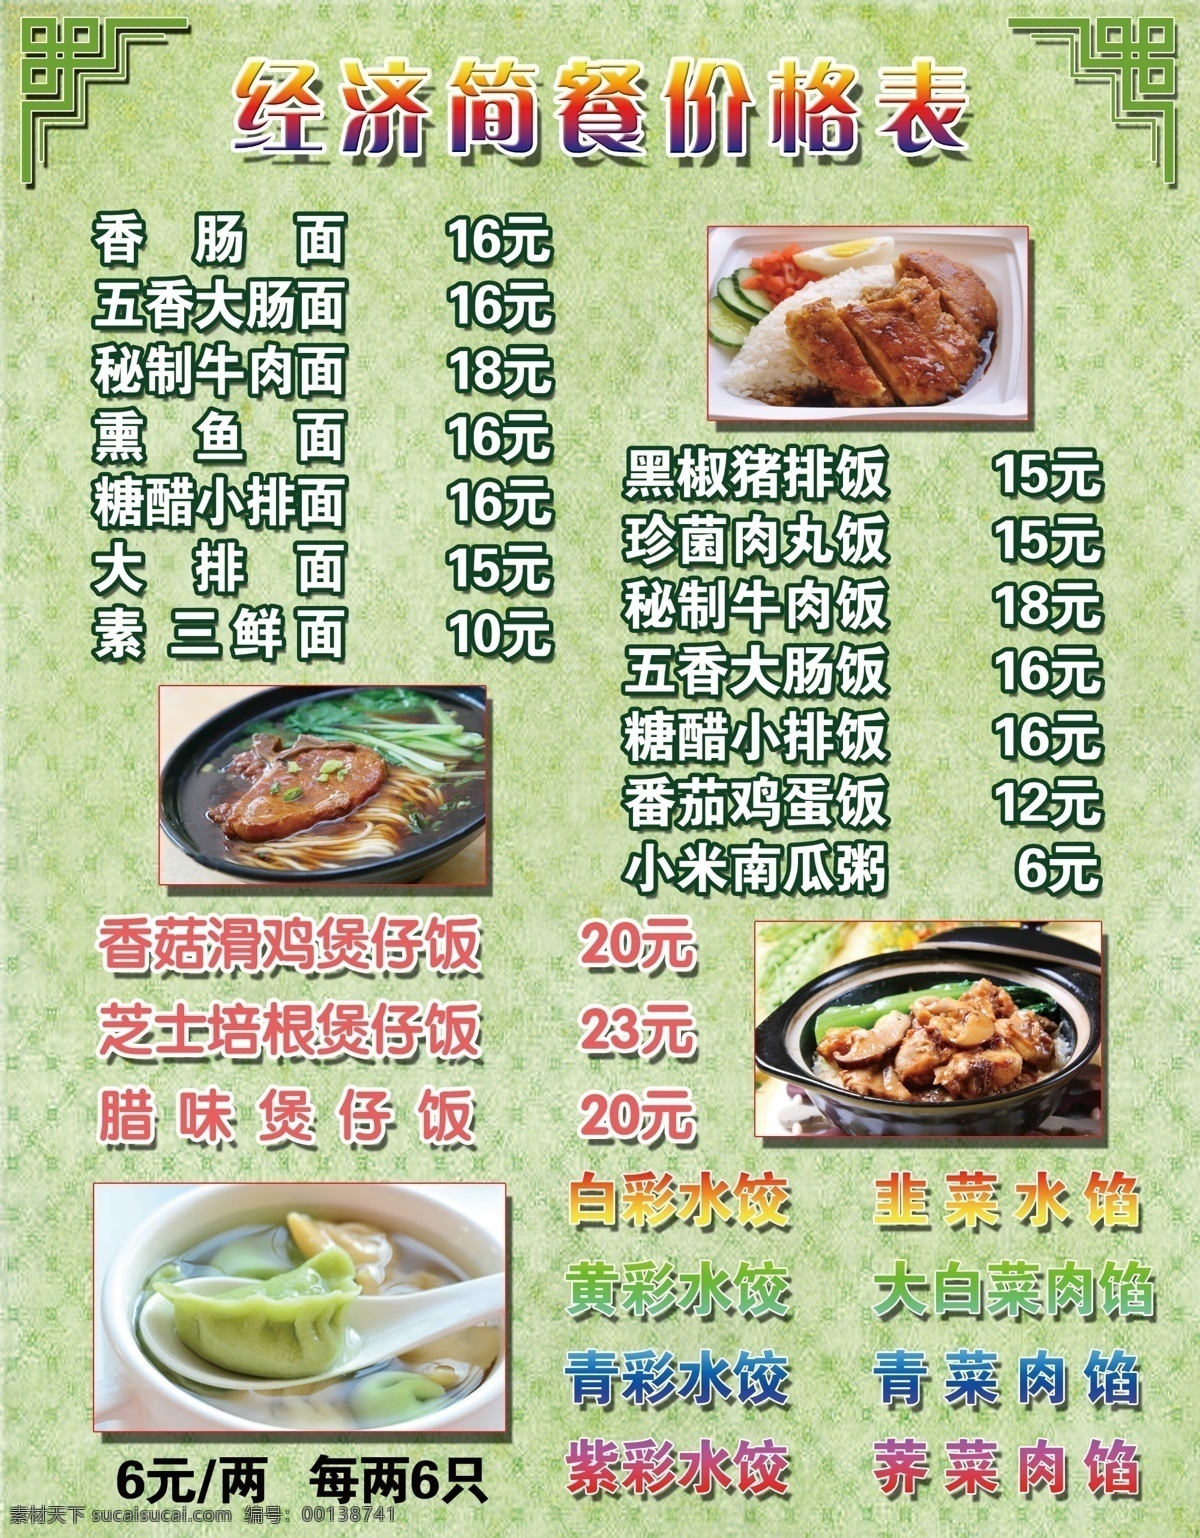 餐厅 面食 煲仔饭 价格表 菜单 绿色 背景 底纹 水饺 彩色水饺 边角 矩形边框 餐饮 美少女海报